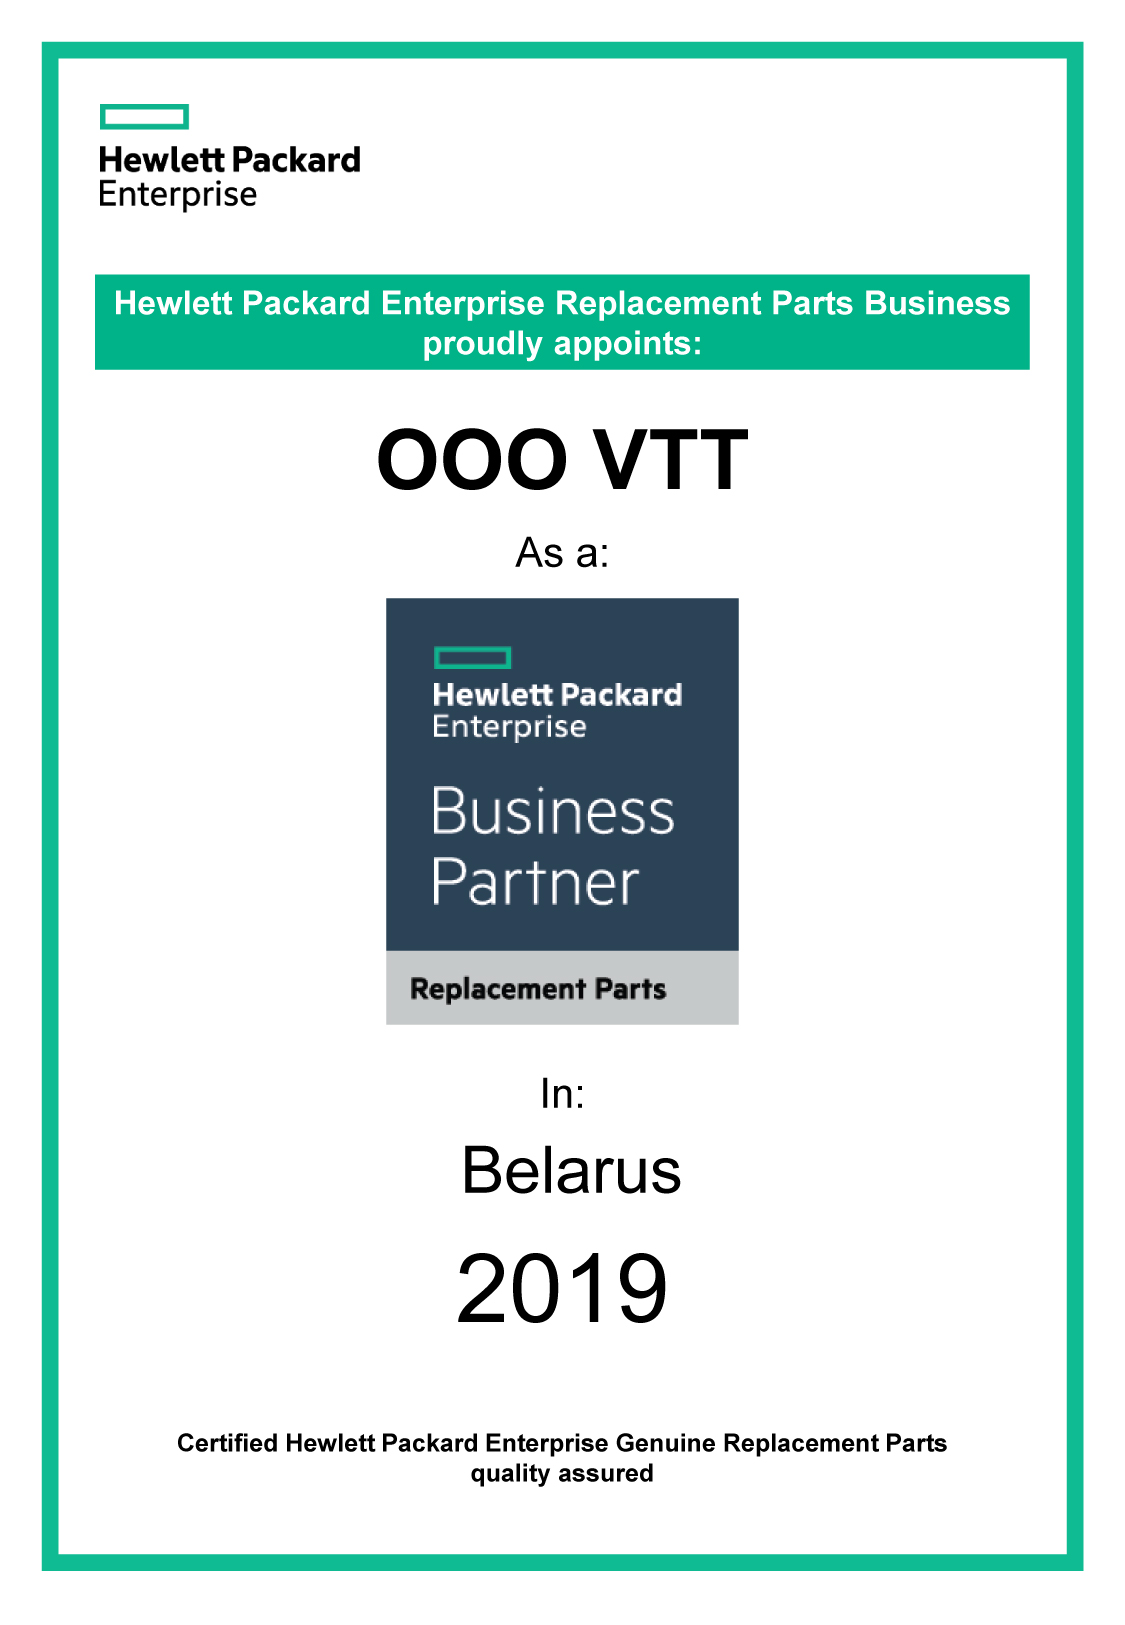 BusinessPartner-HPE-сертификат-компьютерные-и-серверные-запчасти-2019.jpg